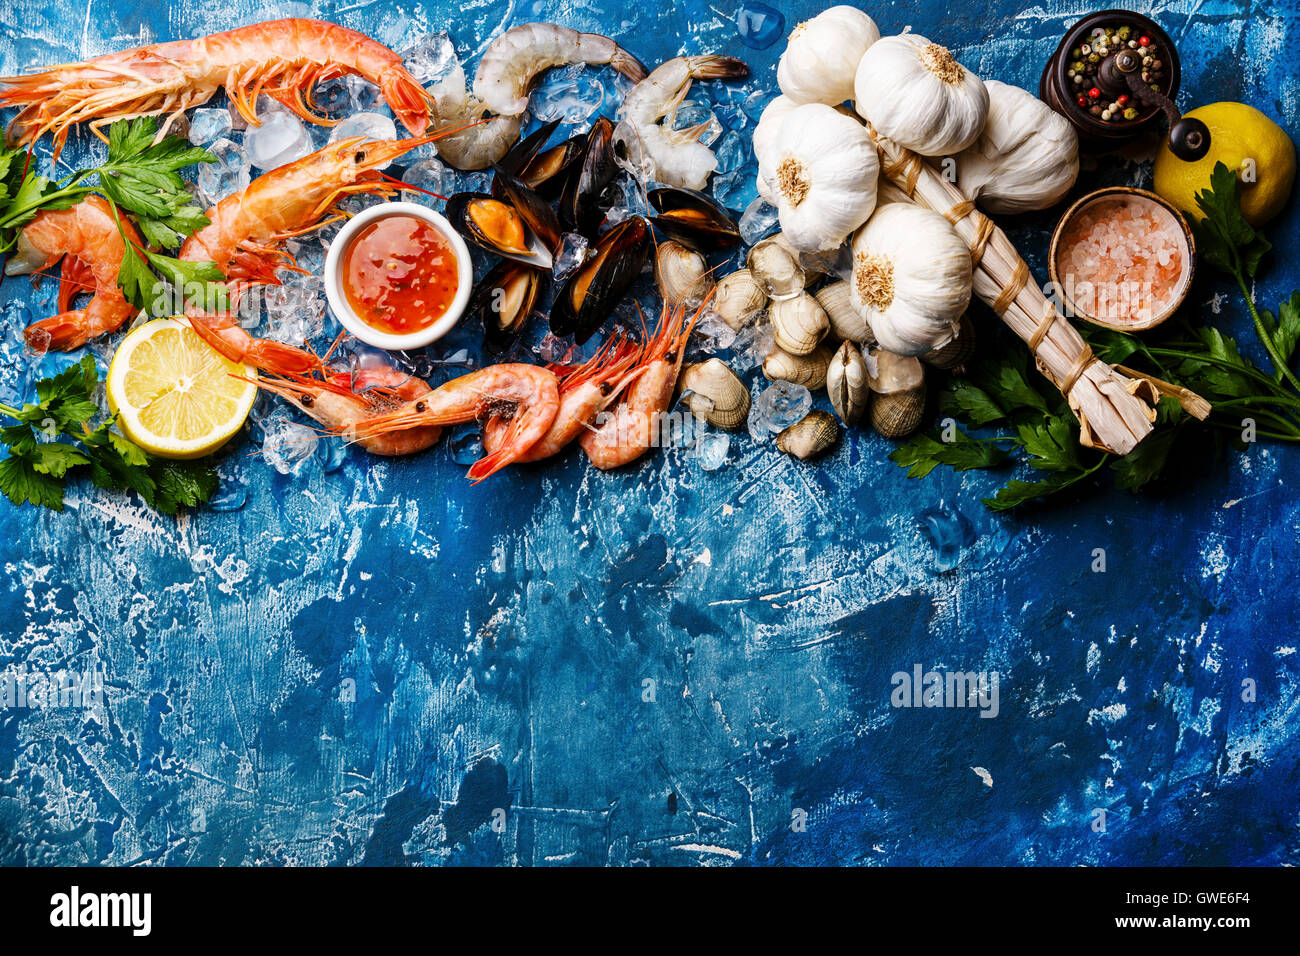 Copie de fruits de mer avec l'arrière-plan de l'espace matière première fraîche crevettes, palourdes, moules, crevettes, Vongole et ingrédients Banque D'Images